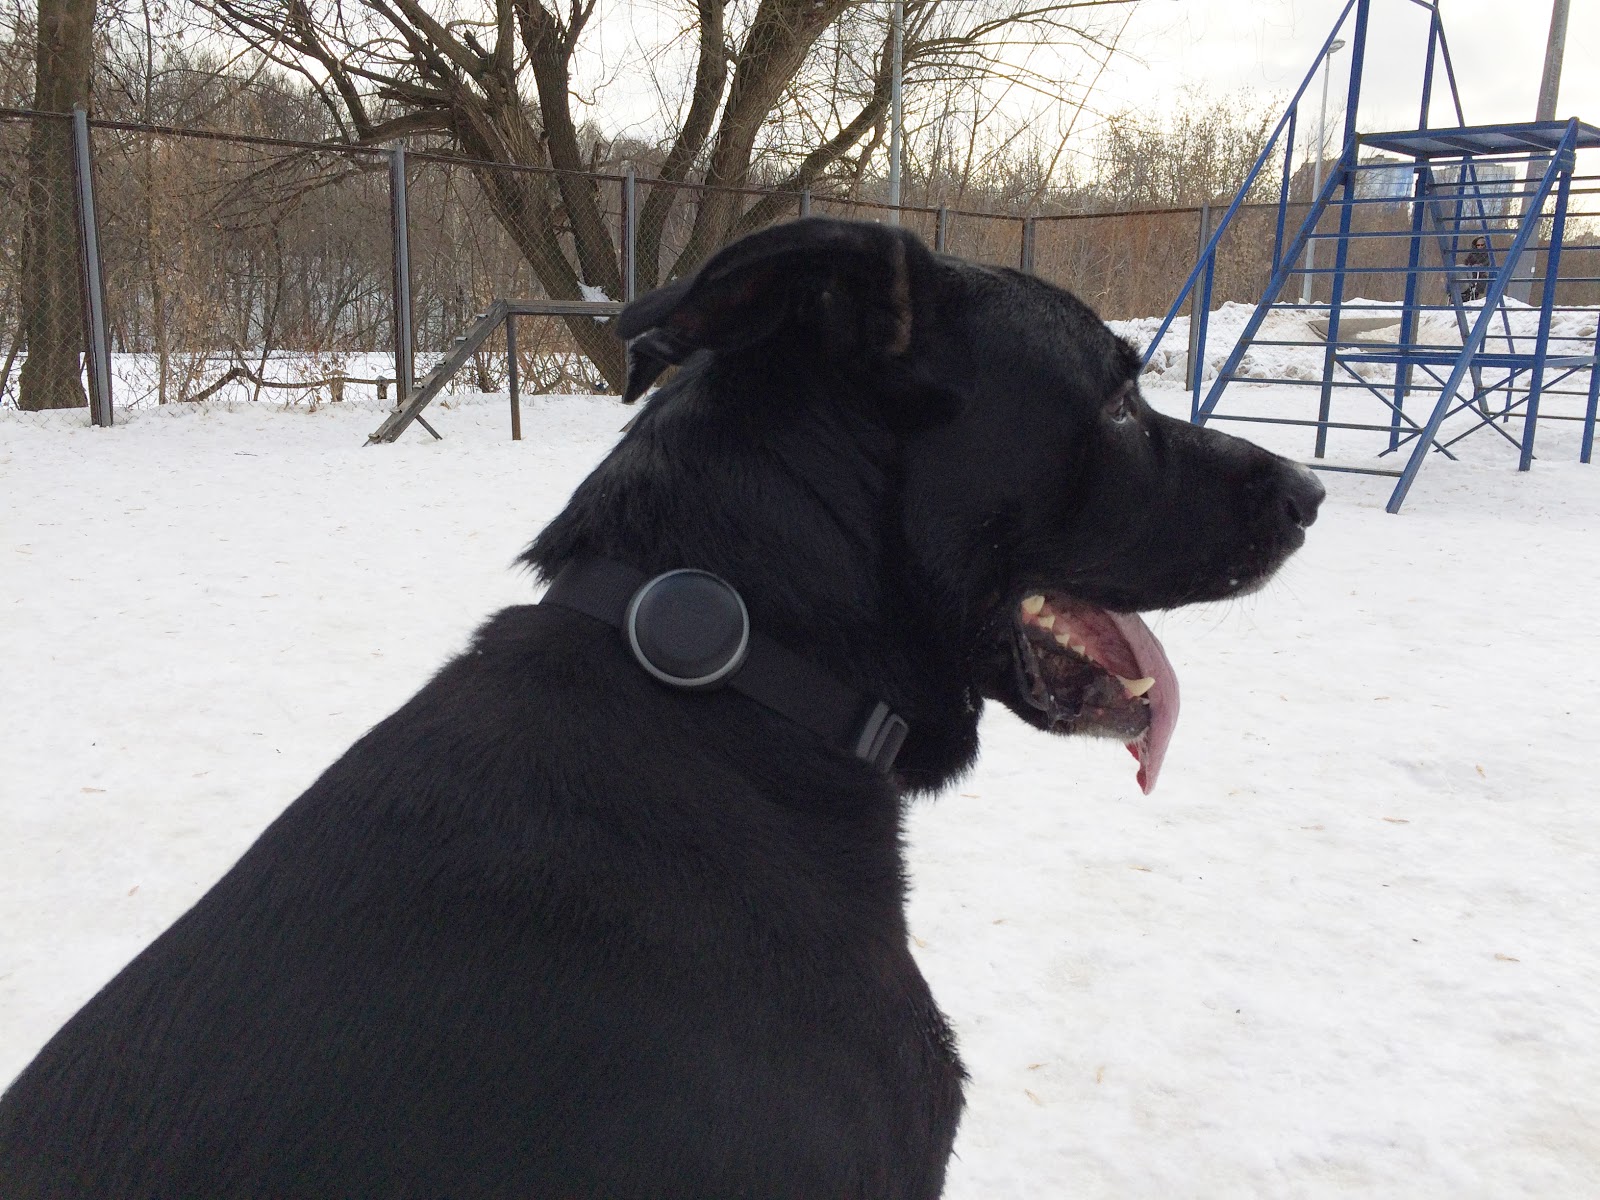 Как работает GPS-трекер для собак Mishiko в Москве?